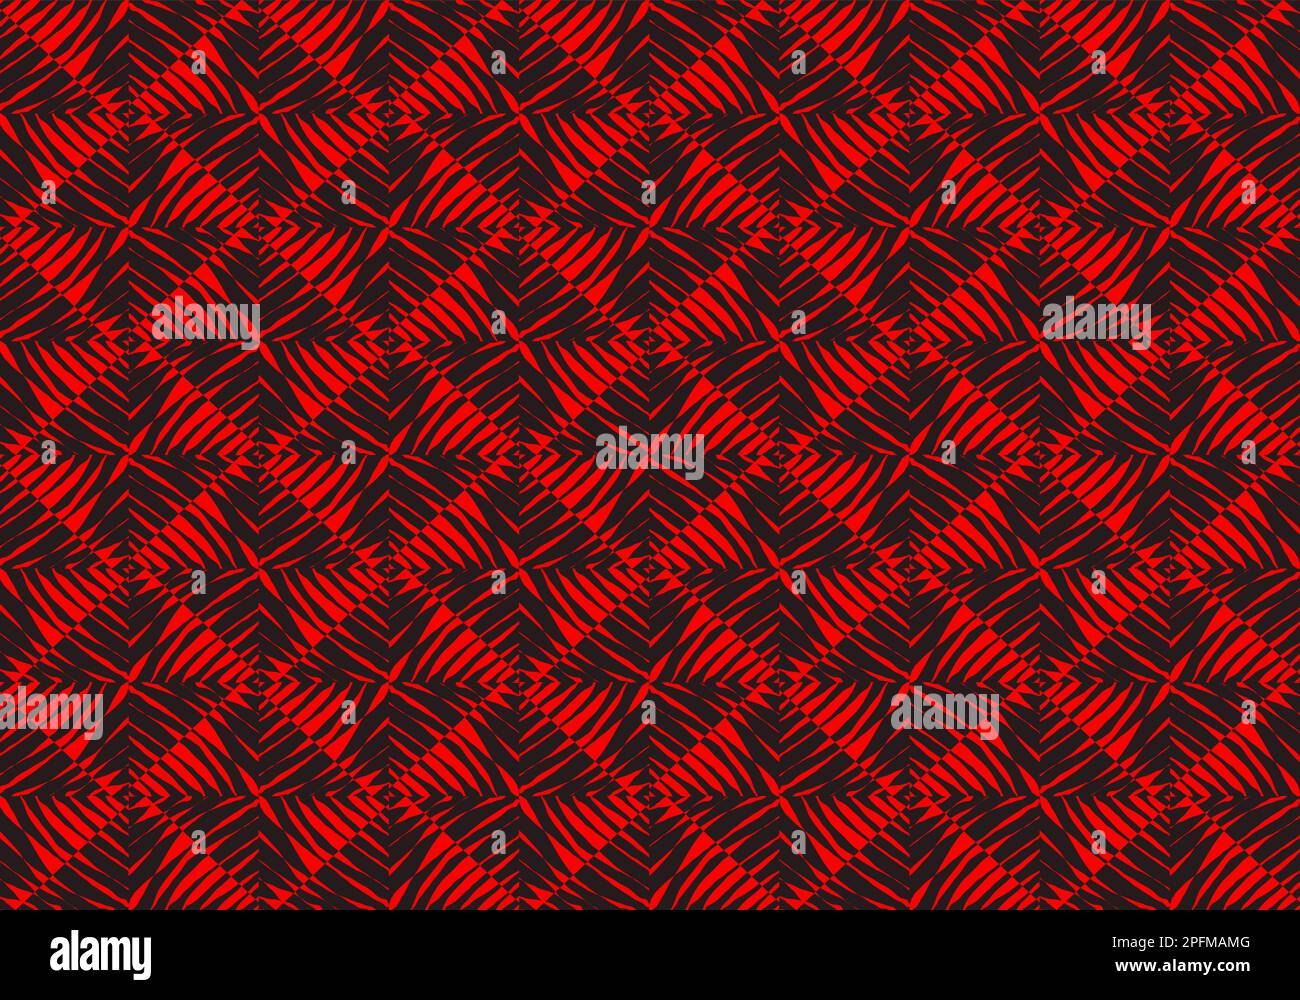 Mosaiksteine mit roten und schwarzen Blattmustern Designkunst für den Hintergrund. Nahtloses Muster. Mosaik. Geometrie. Grafische Konstruktion Von Vektordarstellungen. Stock Vektor